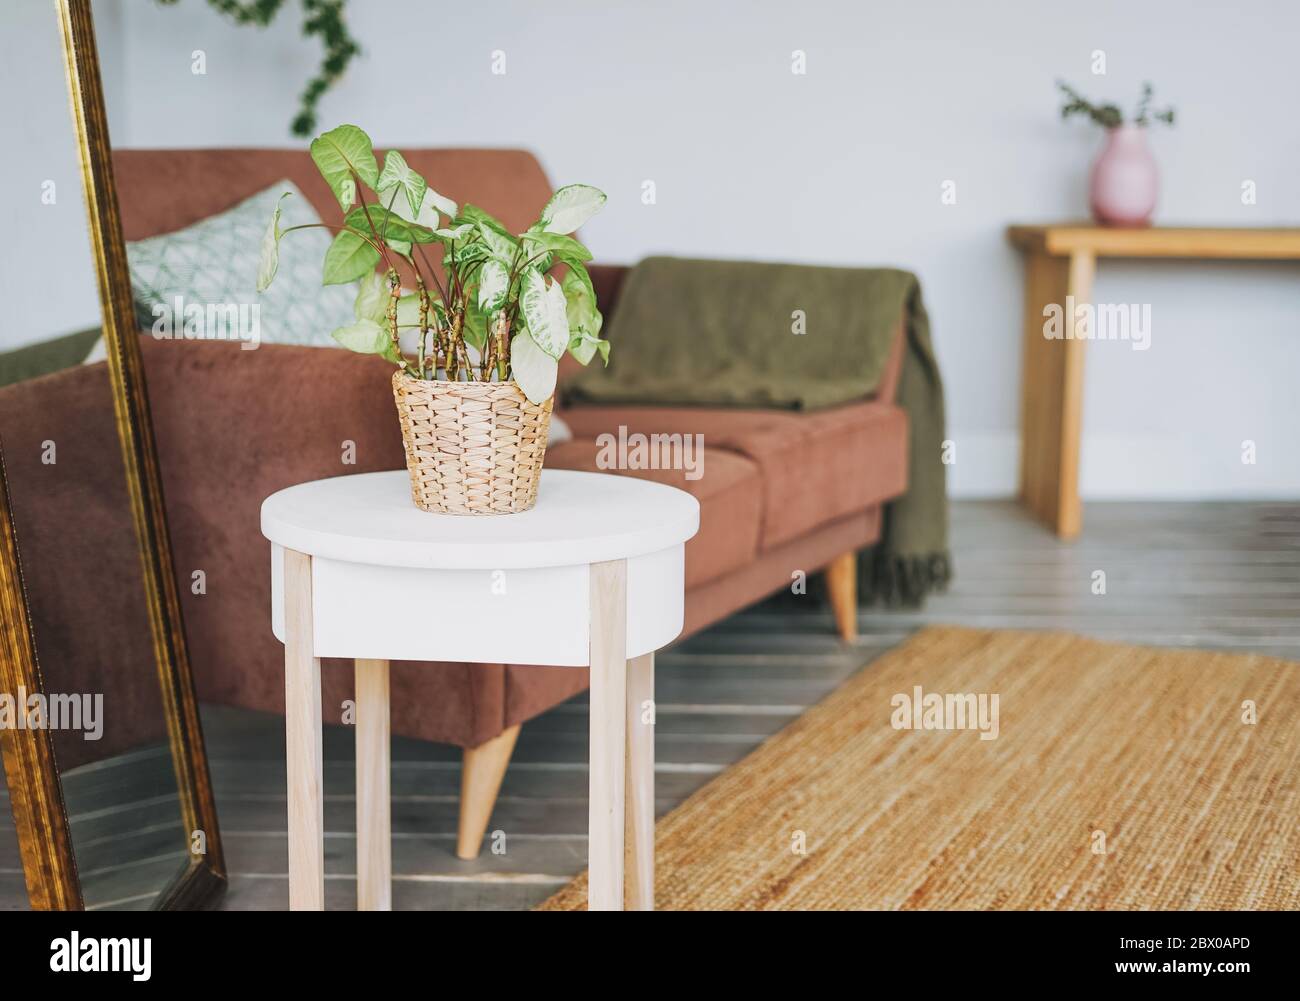 Plante maison verte en osier sur table blanche dans le salon confortable, intérieur scandinave Banque D'Images